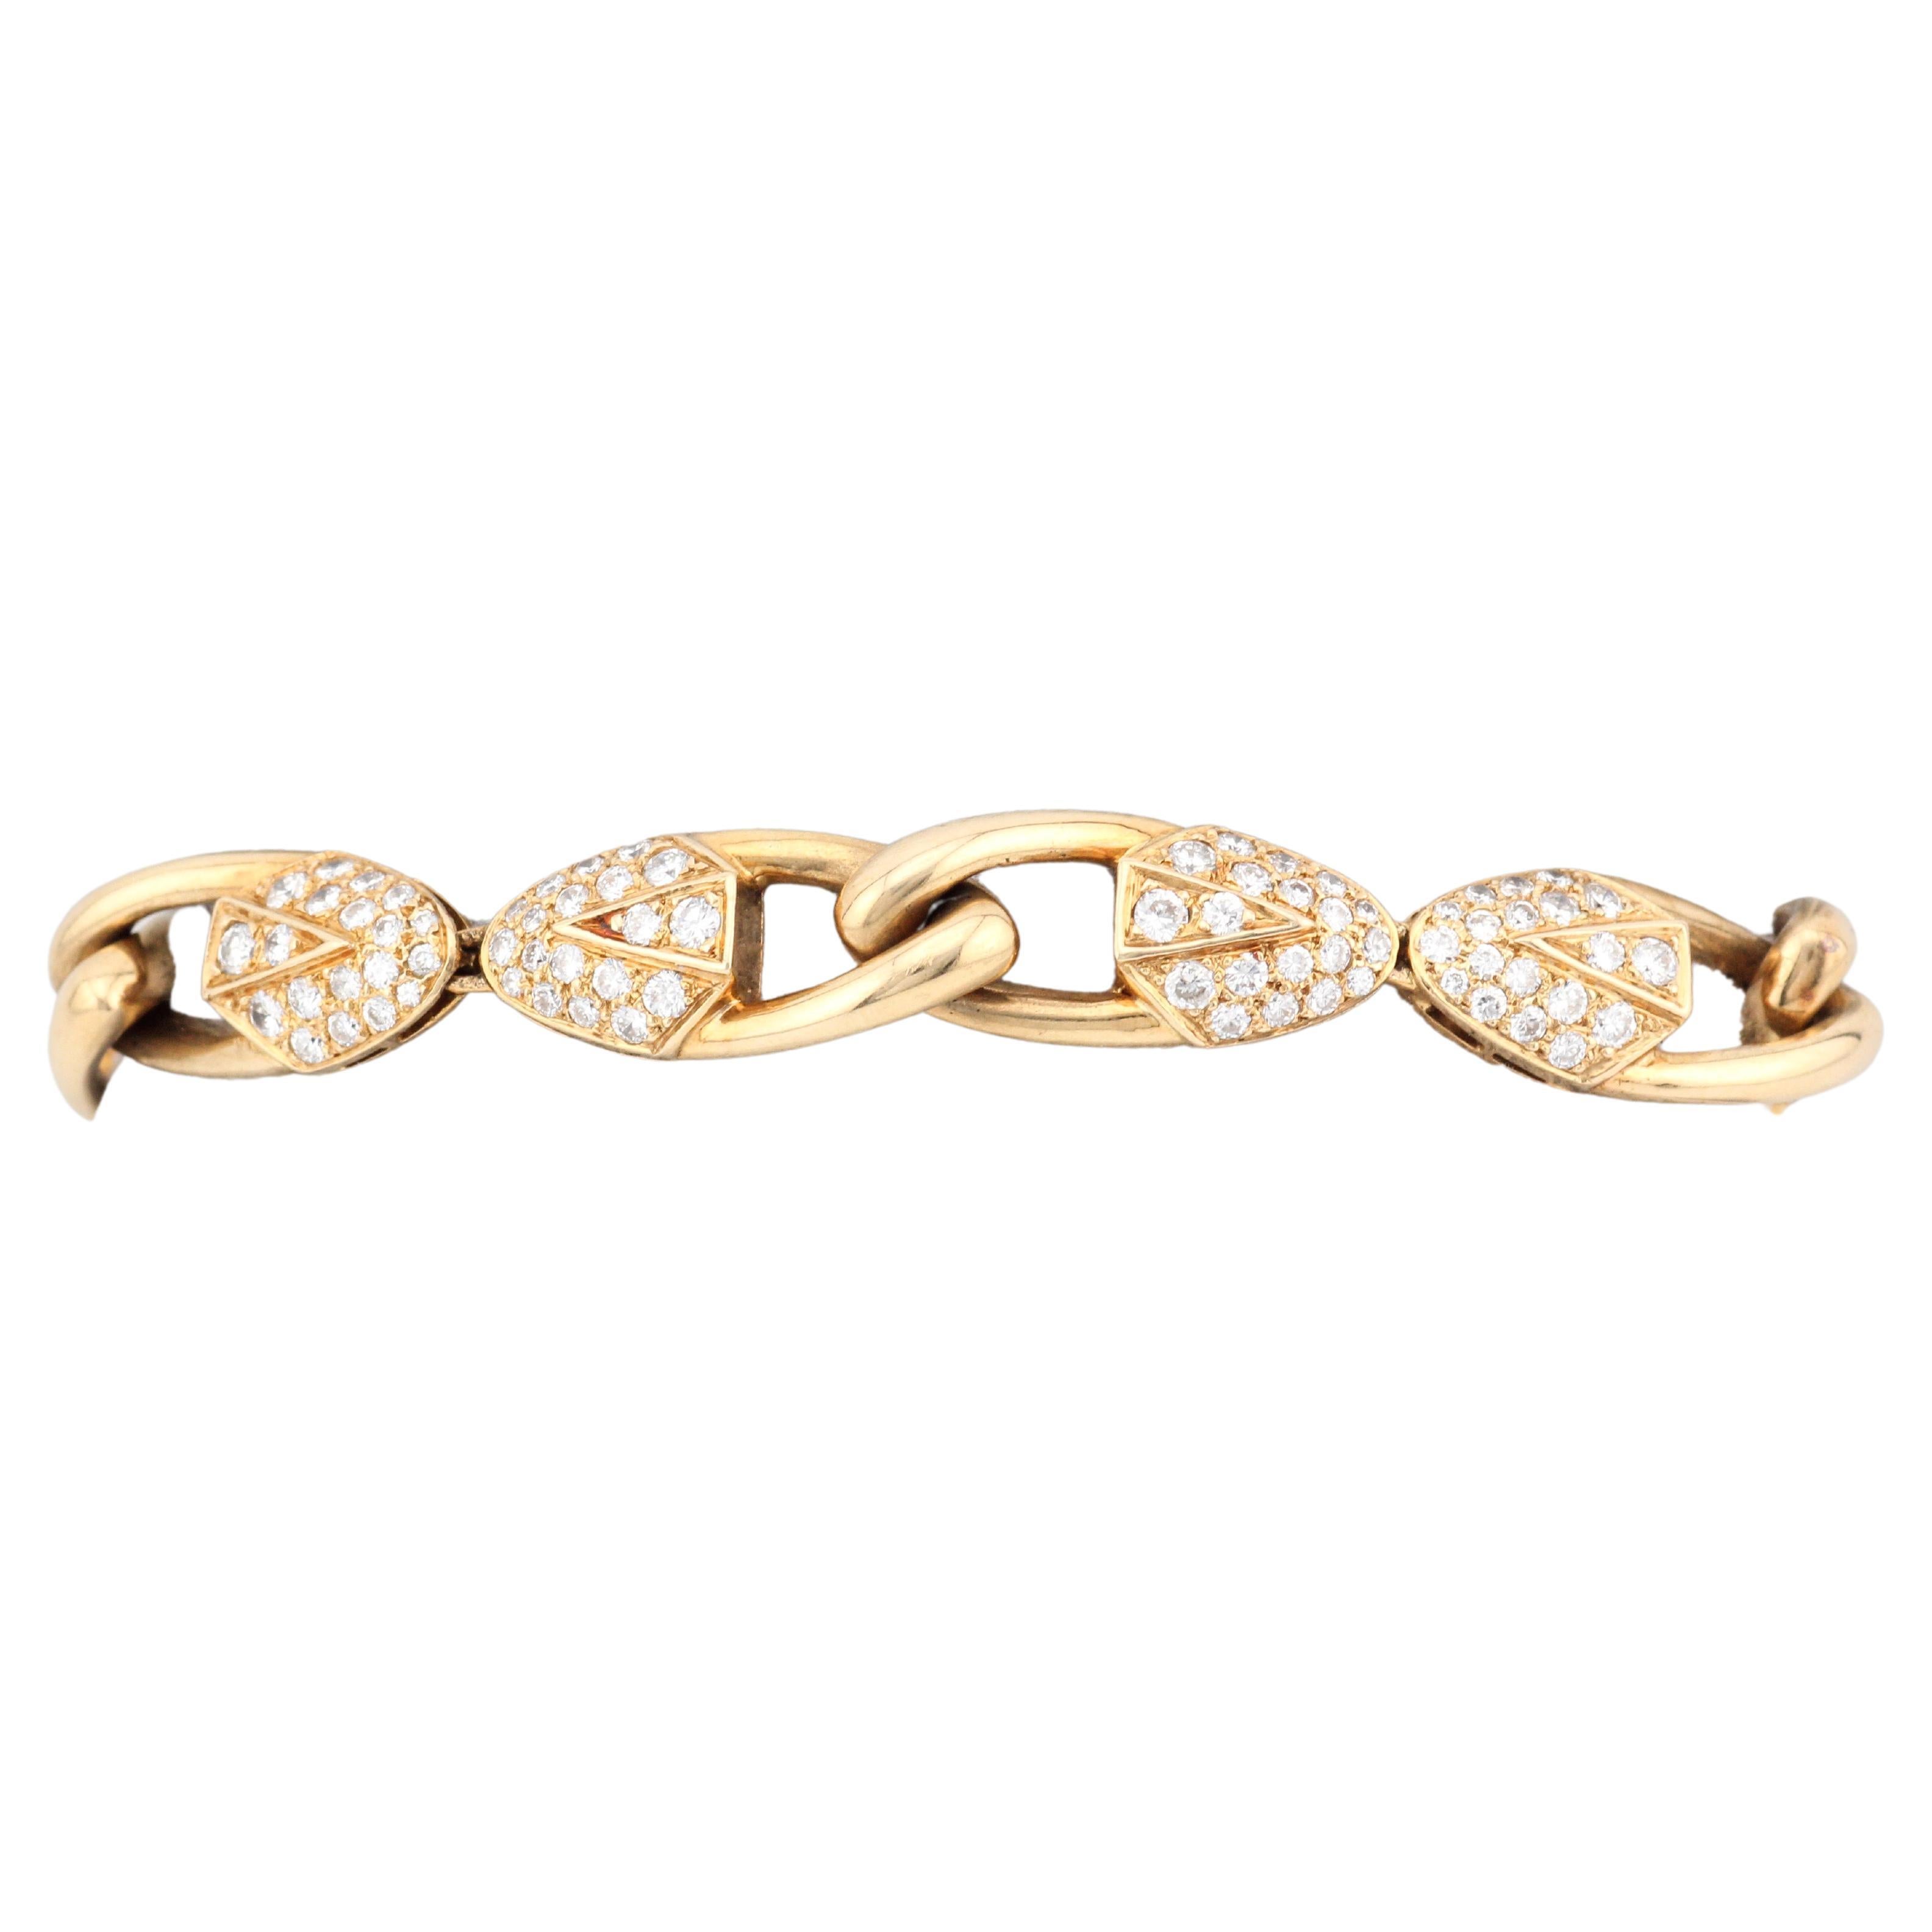 Adoptez le Vintage By avec un bracelet Piaget à diamants pavés

Cet exquis bracelet vintage de Piaget est un trésor intemporel pour le collectionneur de bijoux exigeant. Réalisé en luxueux or jaune 18 carats, ce bracelet présente un captivant motif